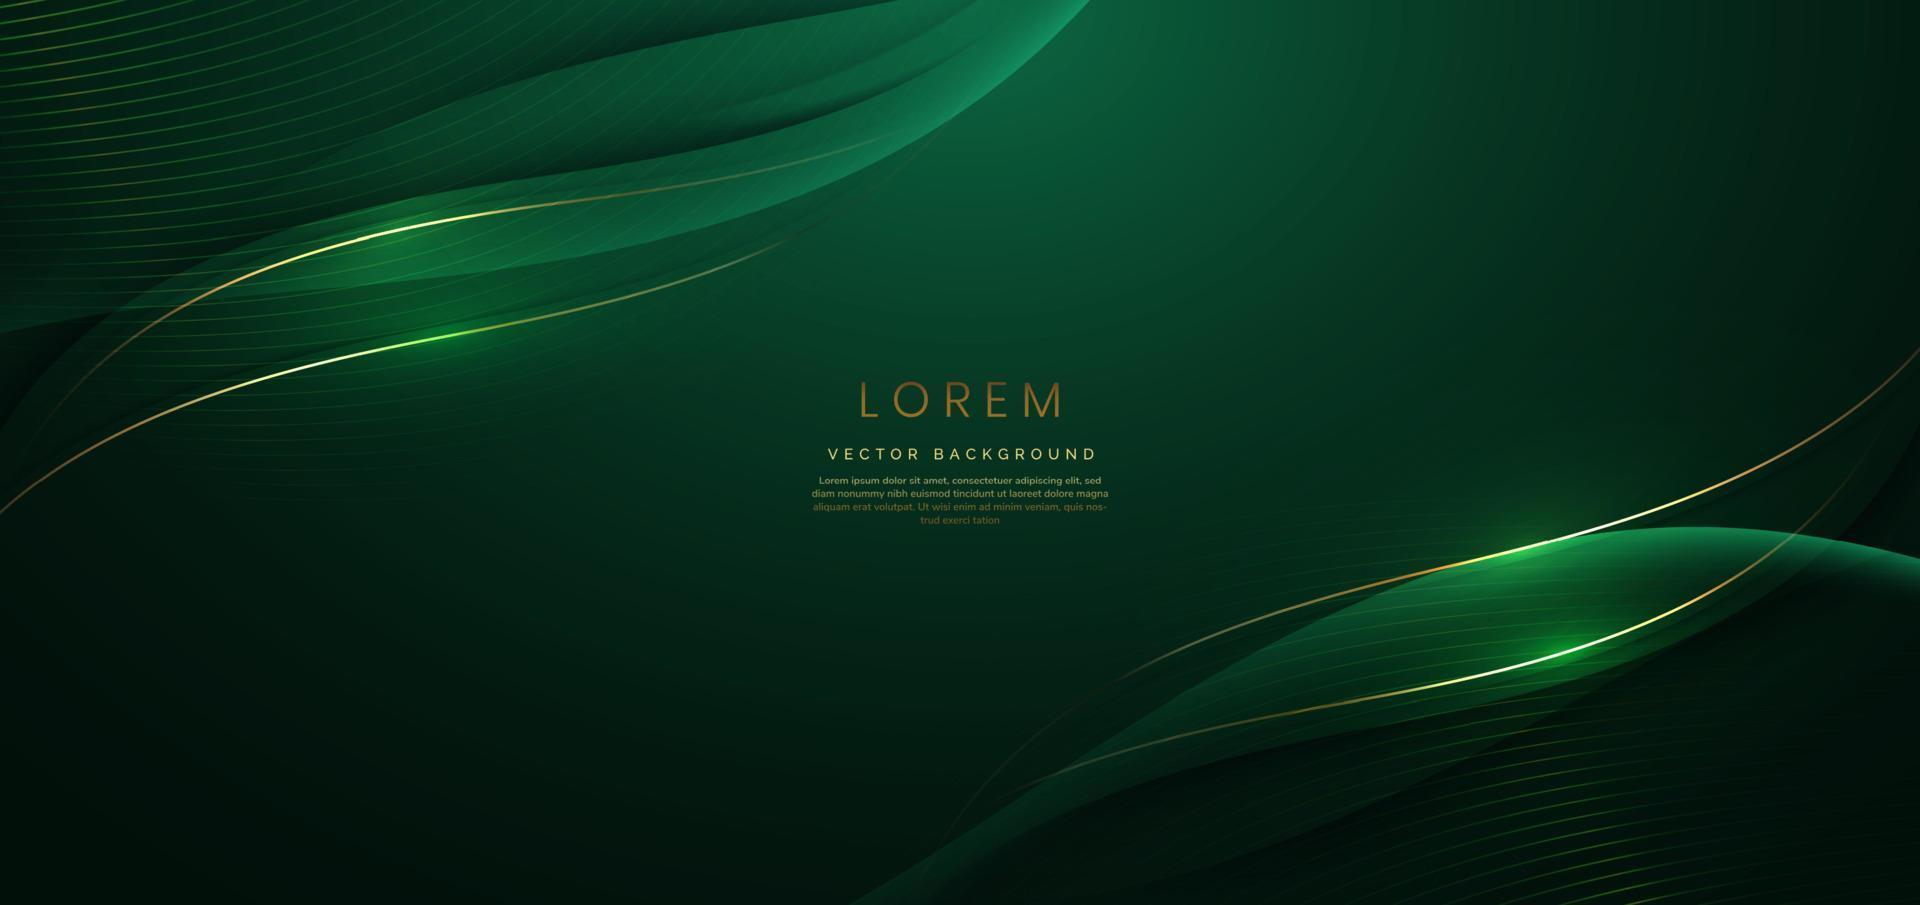 fita verde curvada ouro 3d abstrata em fundo verde escuro com efeito de iluminação e brilho com espaço de cópia para o texto. estilo de design de luxo. vetor